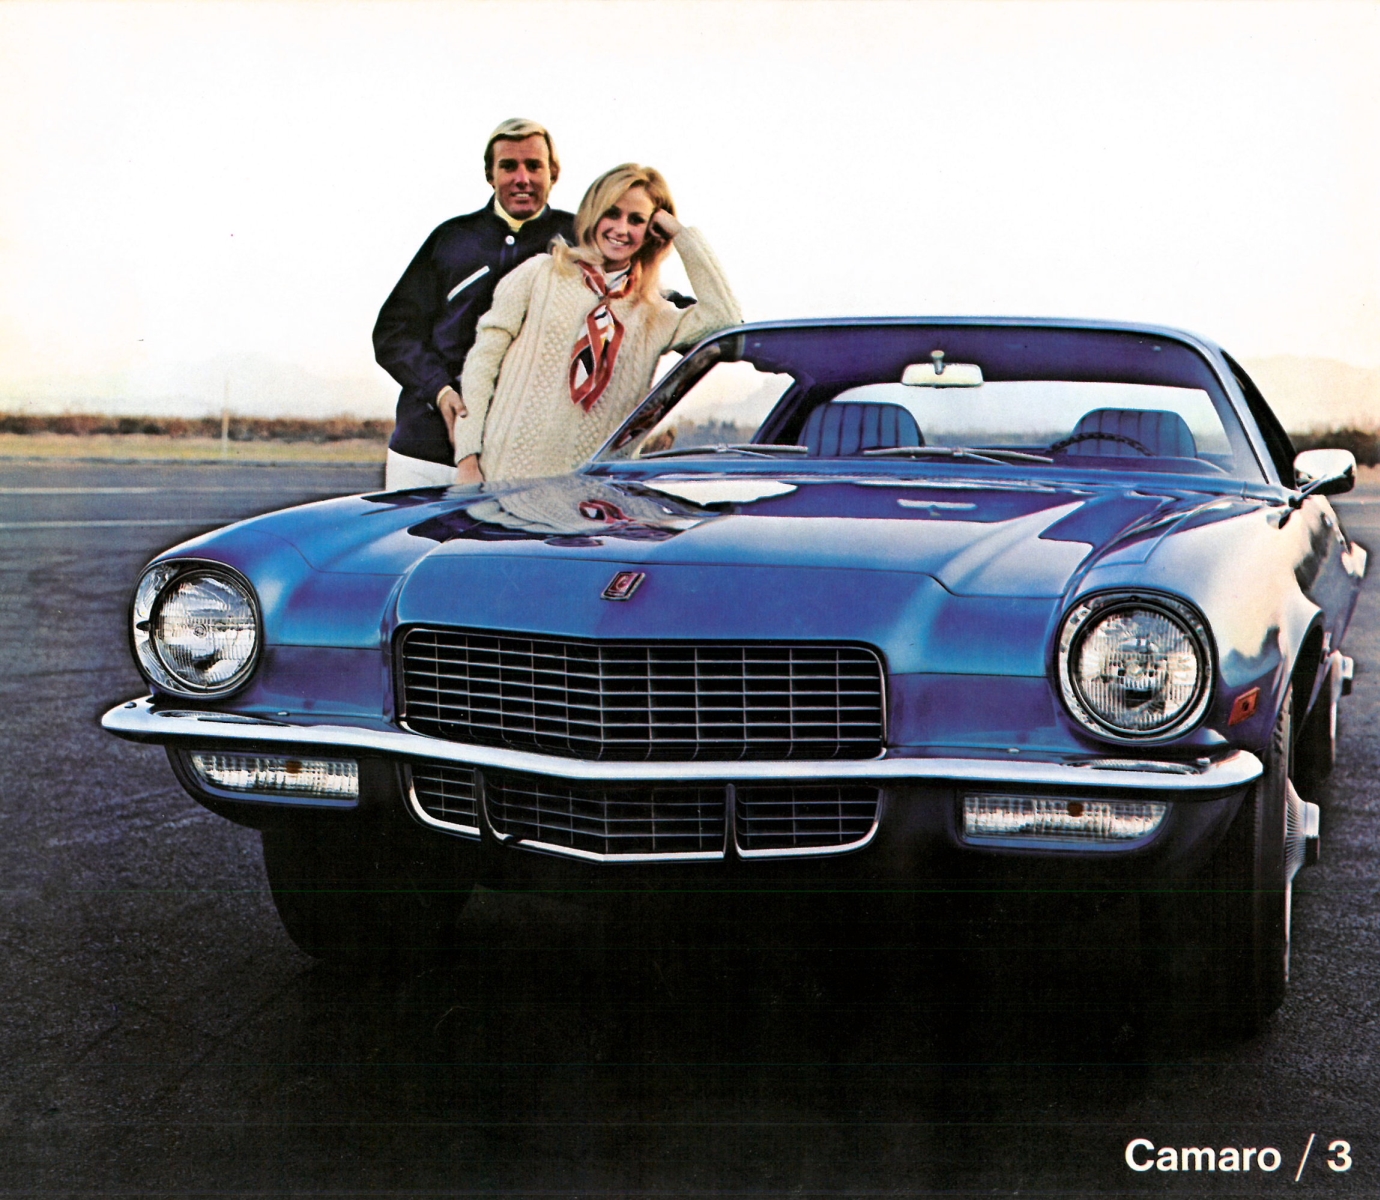 1971_Chevrolet_Dealer_Album-06-03